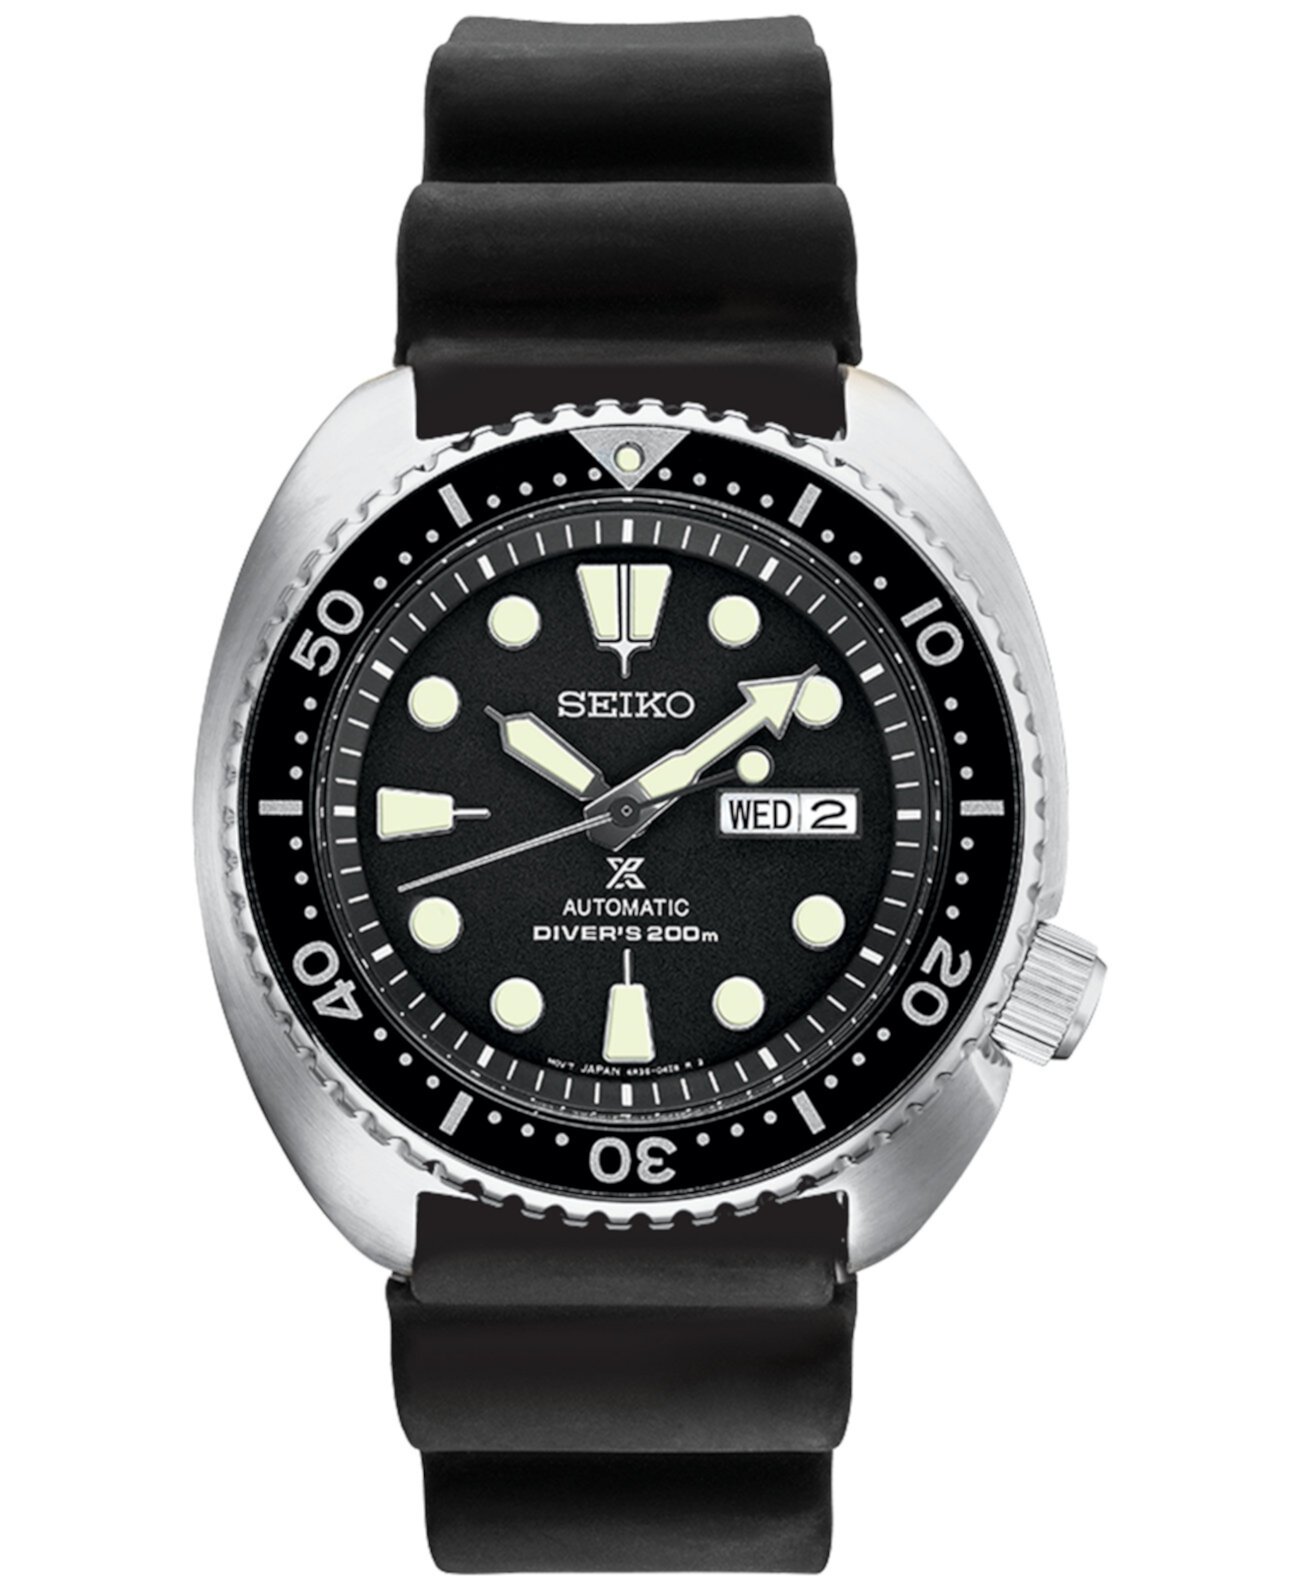 Мужские автоматические часы Prospex Diver с черным силиконовым ремешком 45 мм SEI